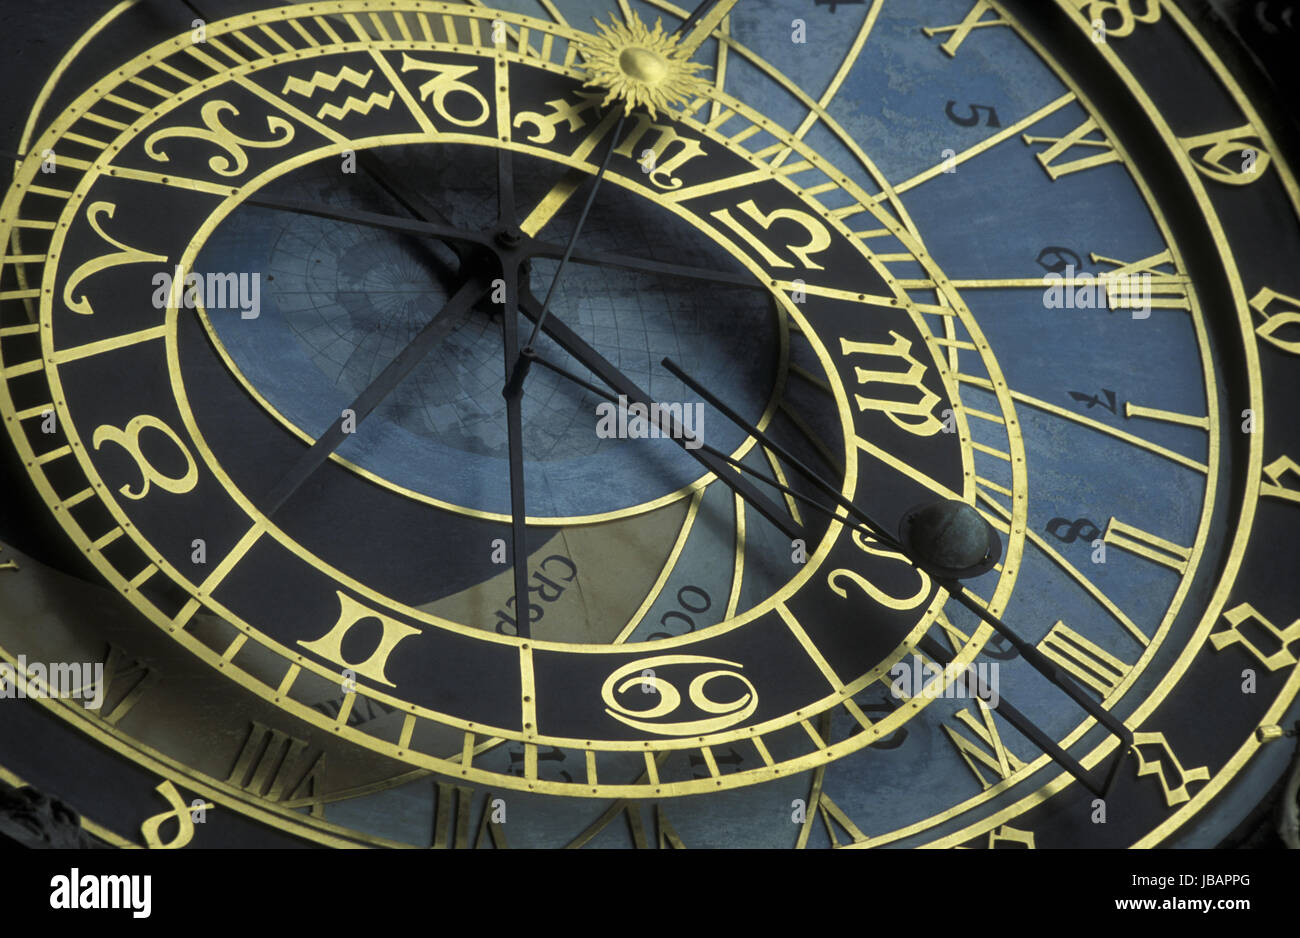 Die Astronomische Uhr auf dem Old Town Square in der Altstadt von Prag der Hauptstadt der Tschechischen Republik. Stock Photo